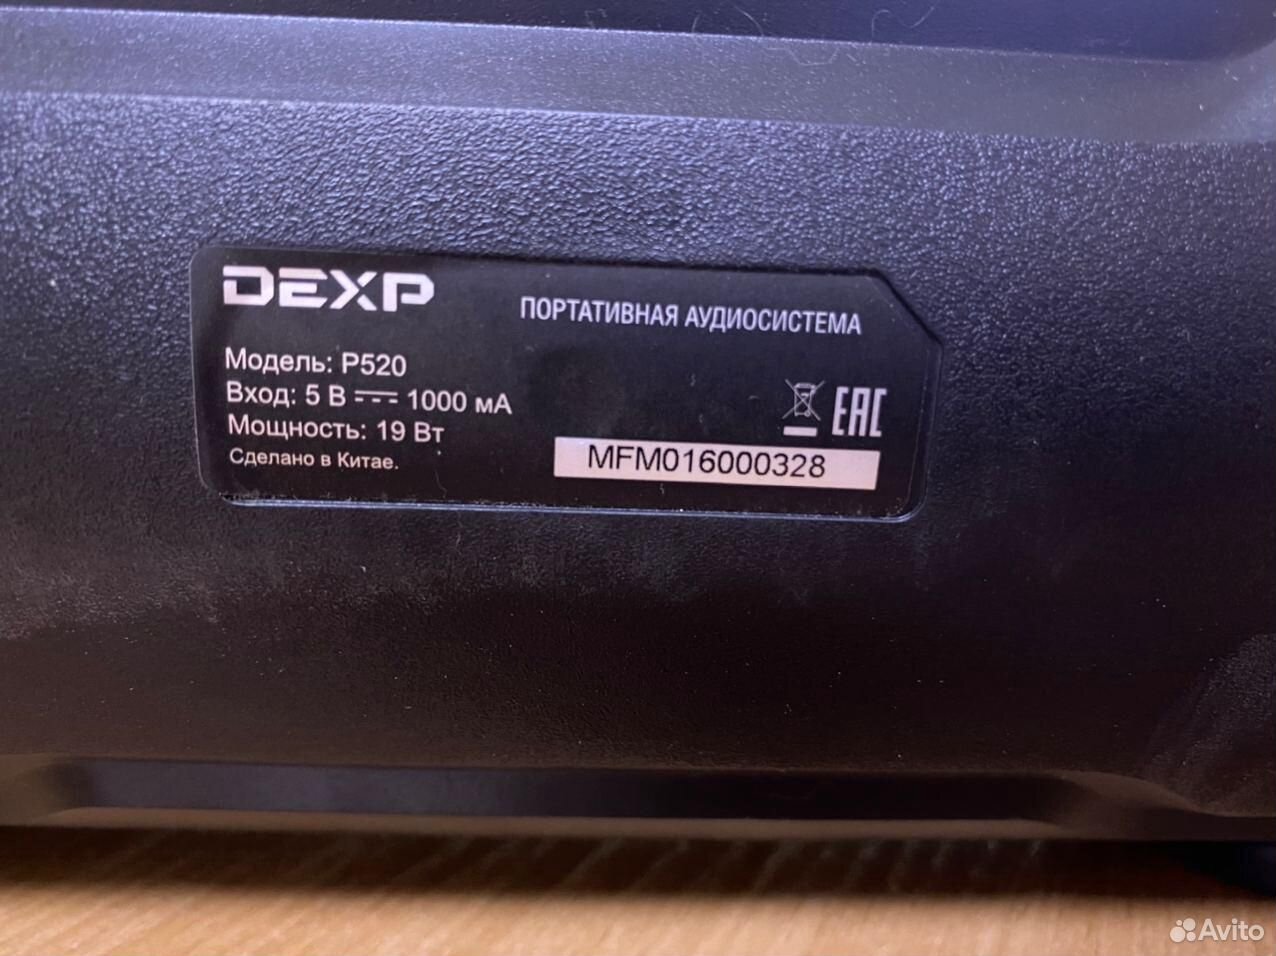 Портативная аудиосистема dexp P520 (64) 89080093671 купить 4